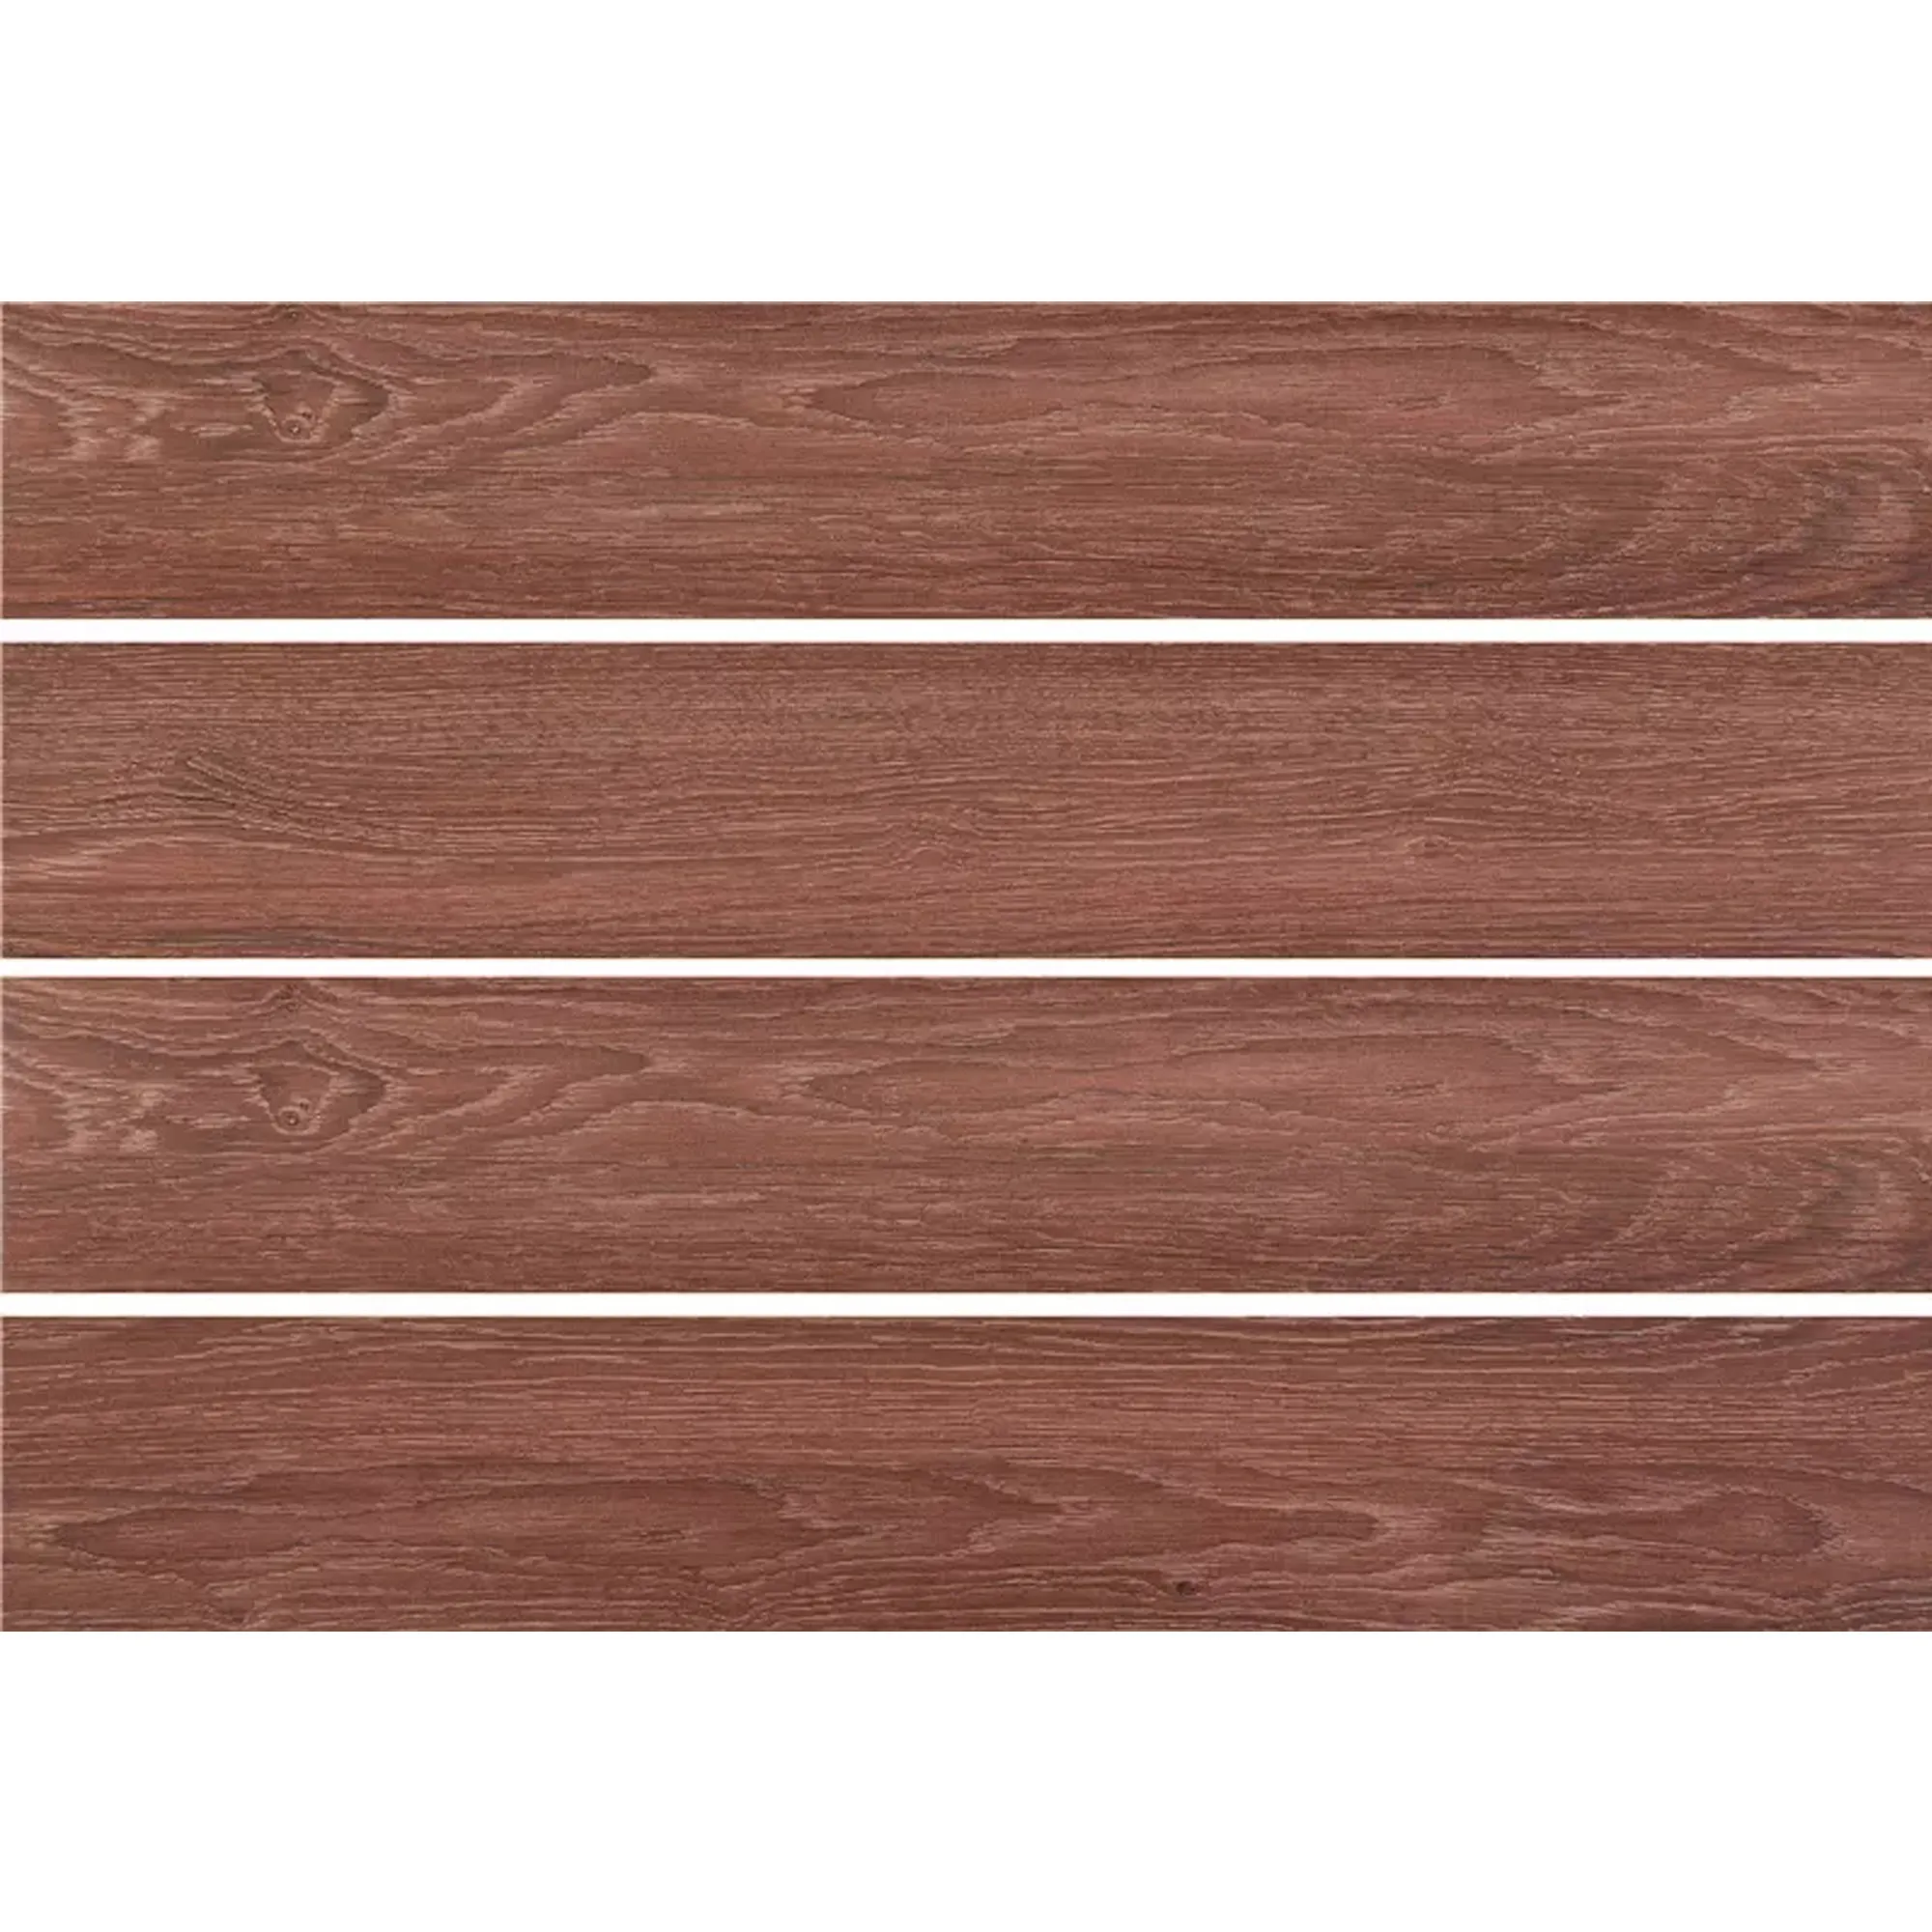 150x900艶をかけられたマット仕上げの磁器セラミック素朴な木製のベニヤモロッコの木製の床の木材タイル